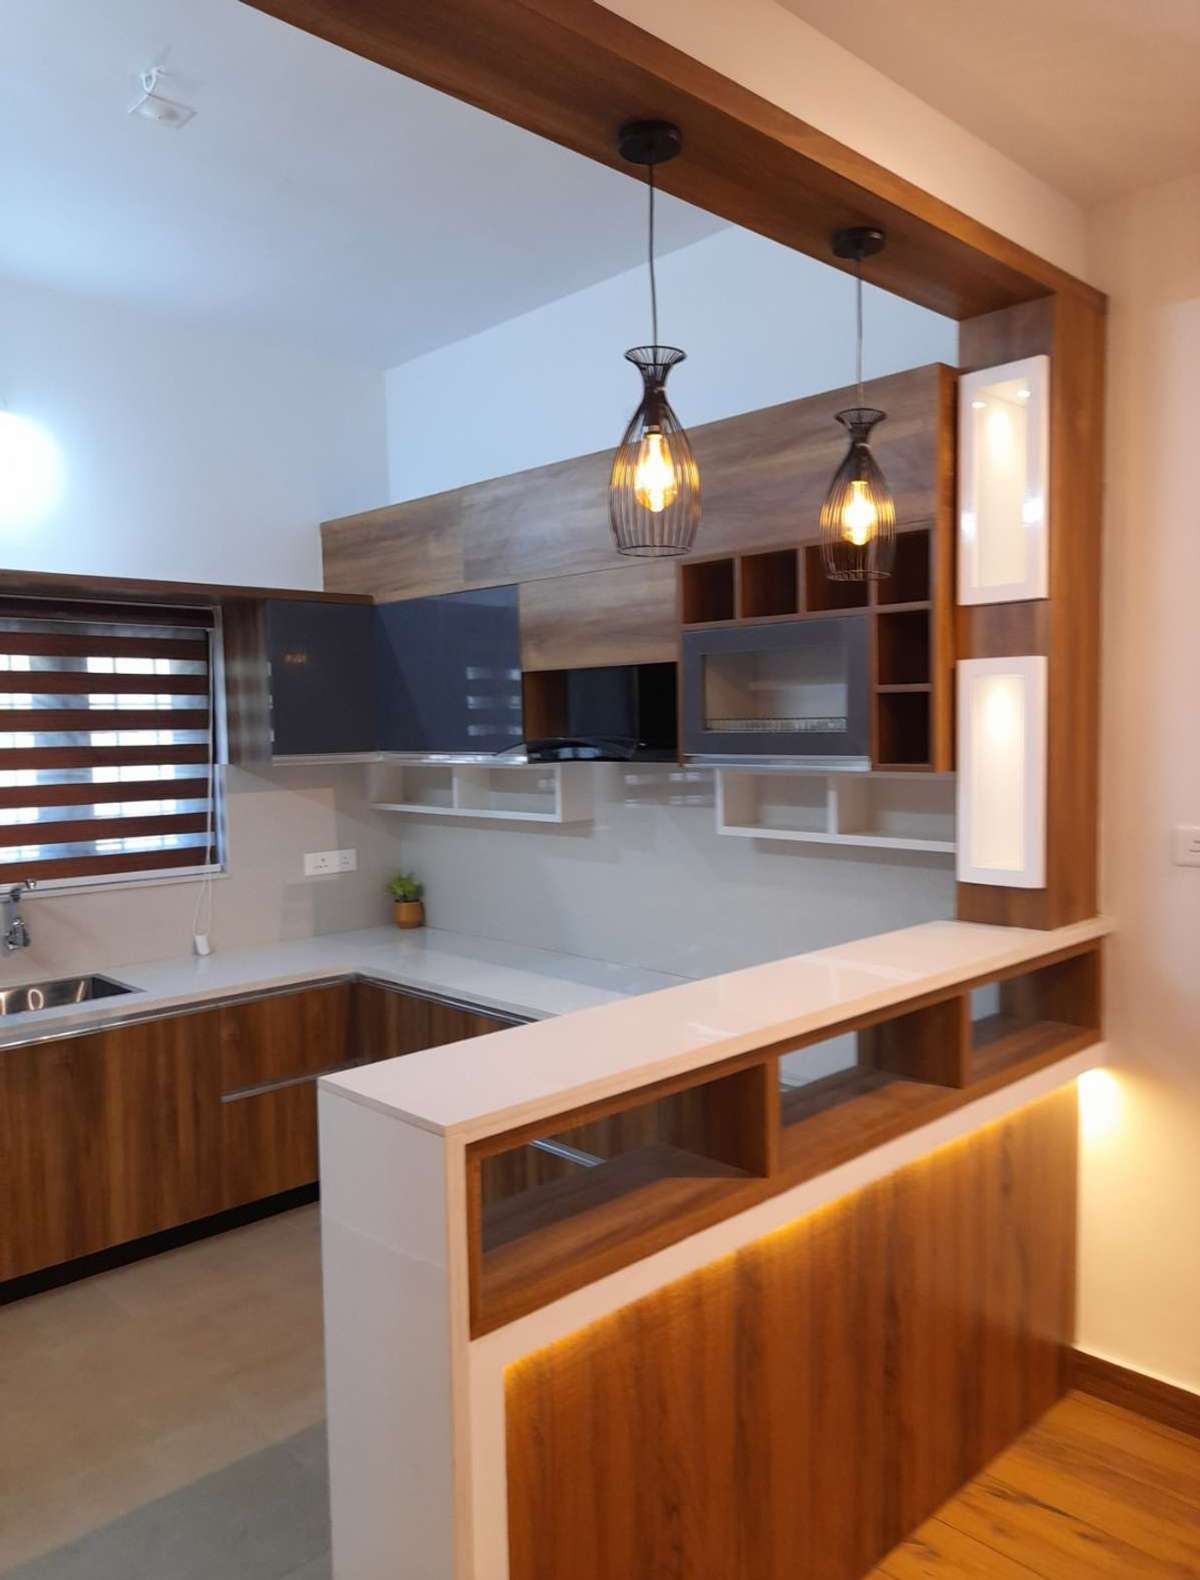 Kitchen, Lighting, Home Decor, Storage Designs by Interior Designer shahul AM, Thrissur | Kolo